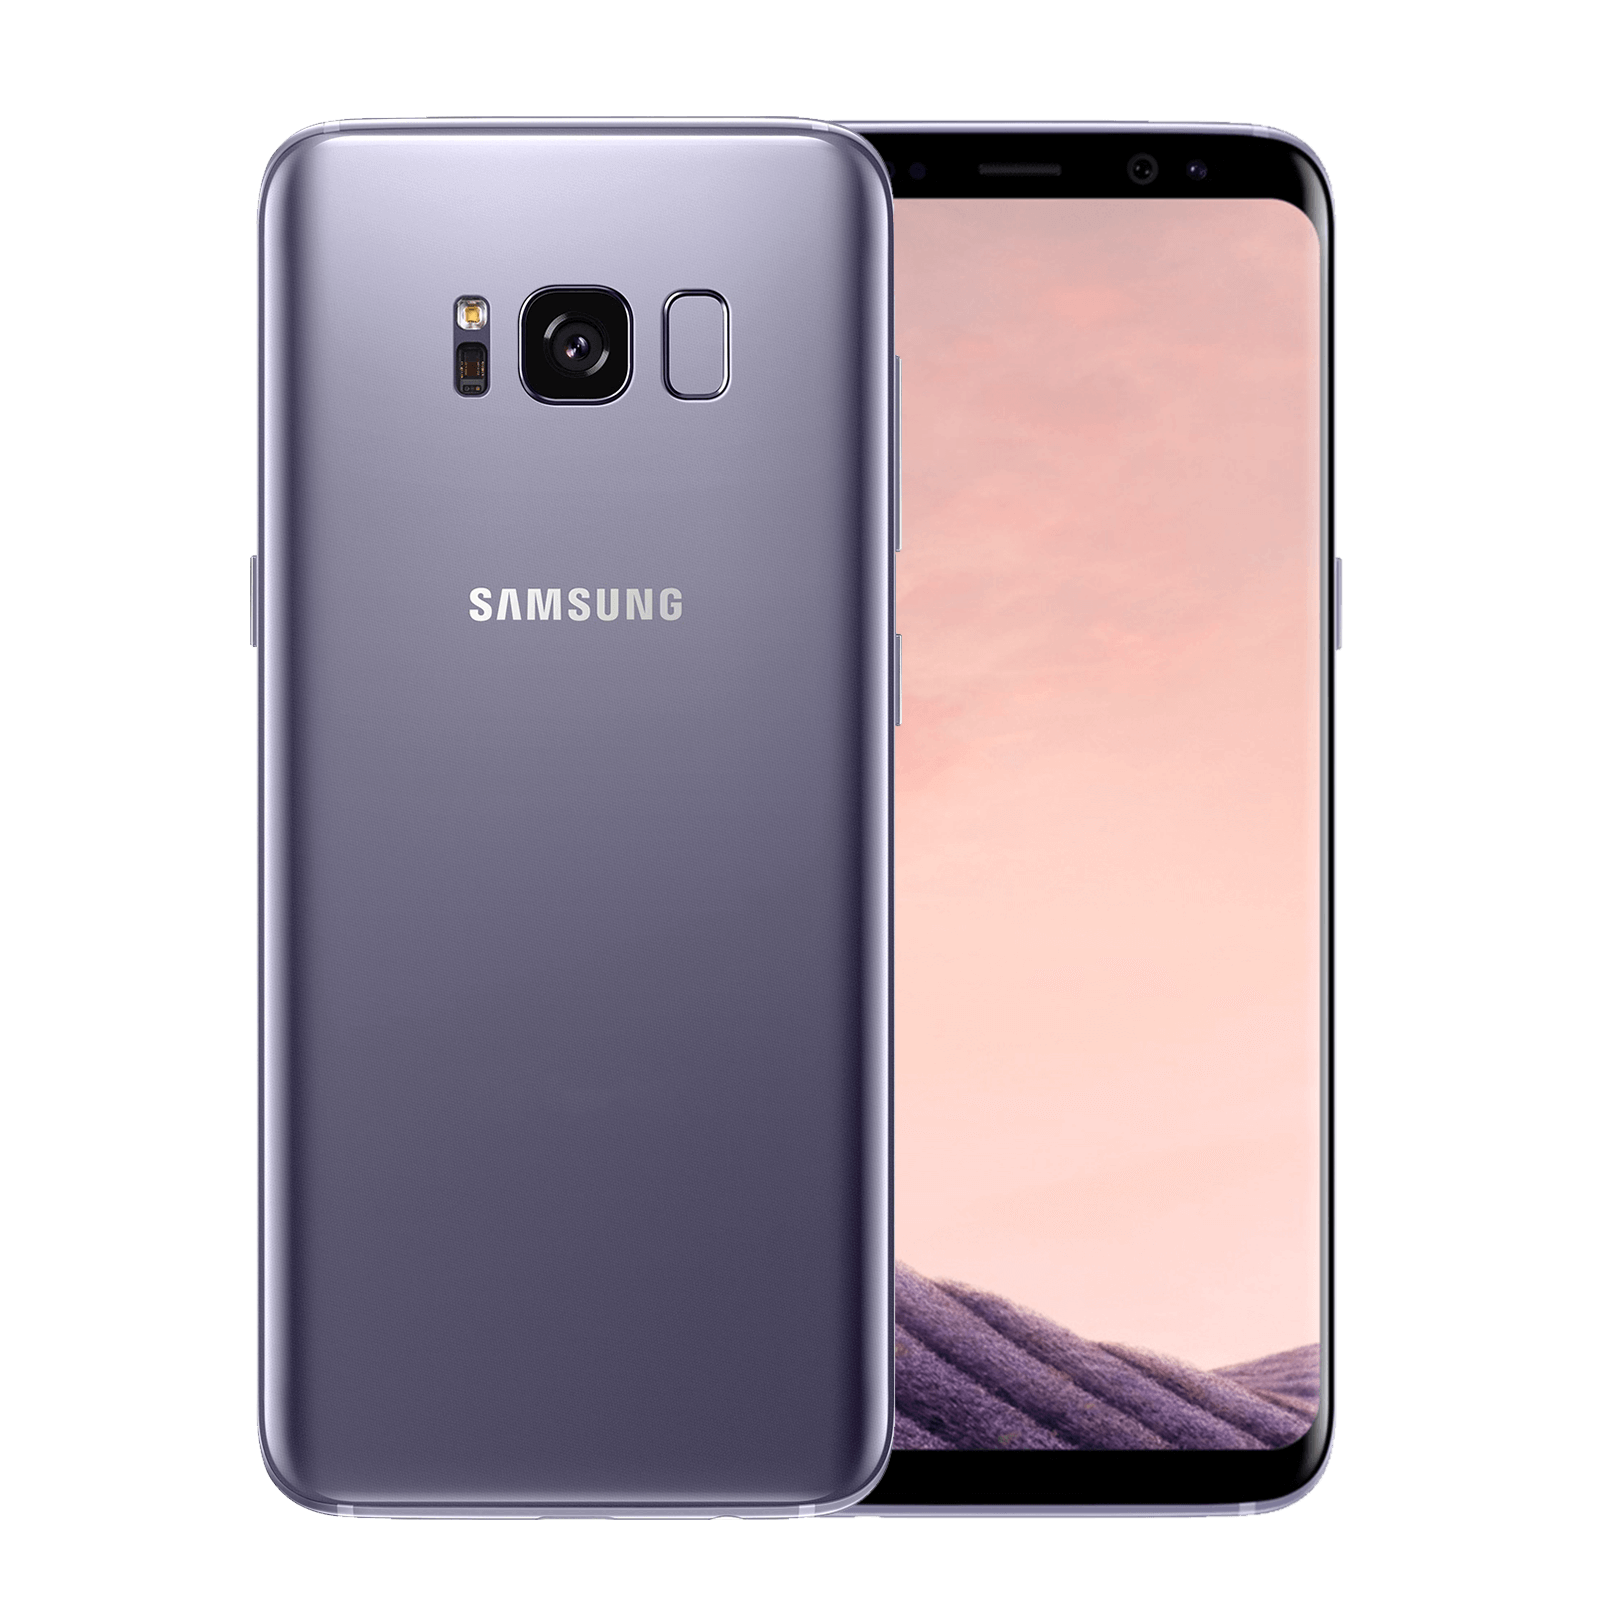 Samsung Galaxy S8 64GB Grey Fair - Unlocked